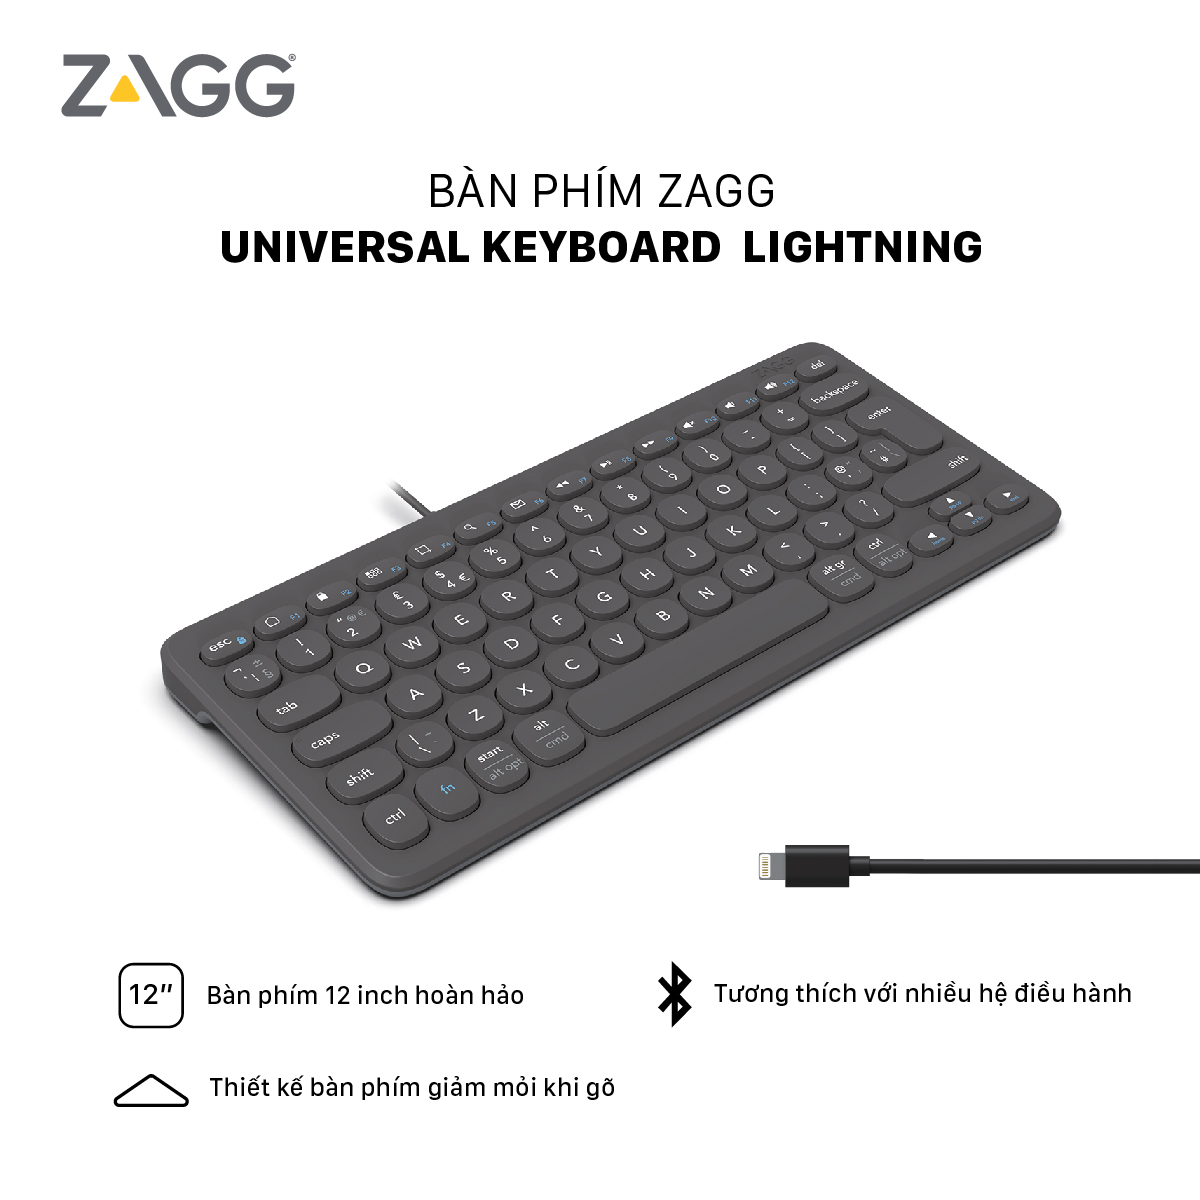 Bàn phím ZAGG Universal Keyboard Lightning - Hàng chính hãng